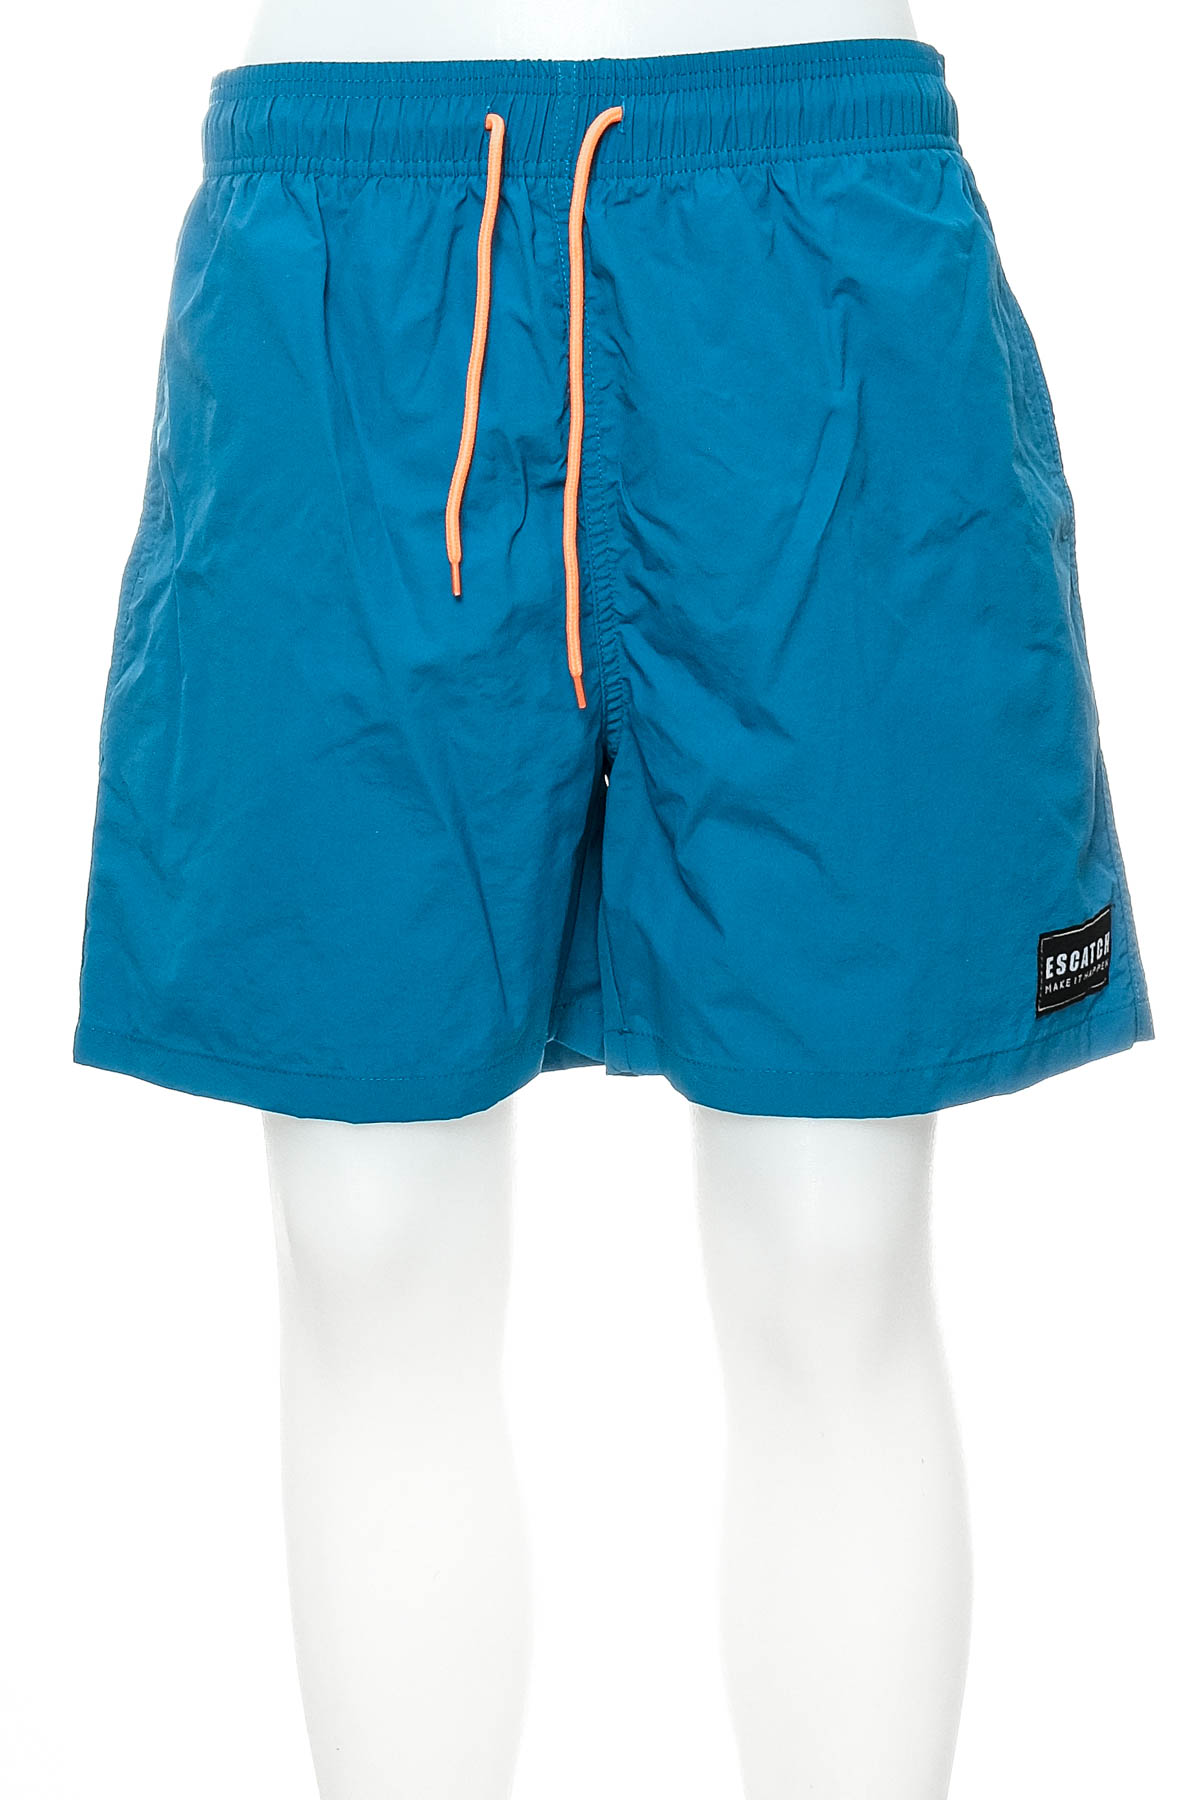 Men's shorts - Escatch - 0